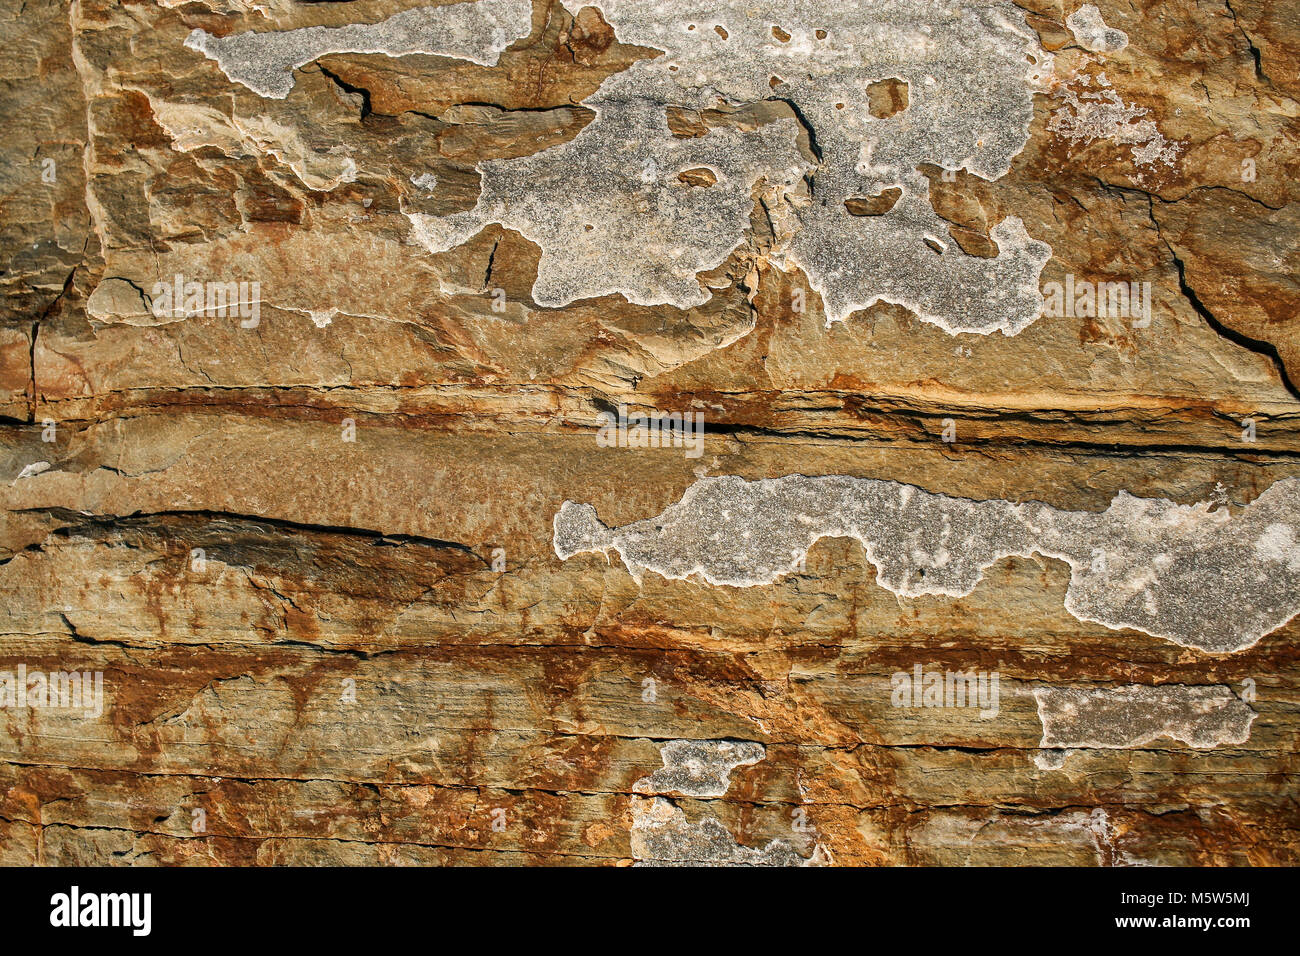 Close-up un mur de roux-brun ardoise de montagne en couches avec des taches irrégulières. Banque D'Images